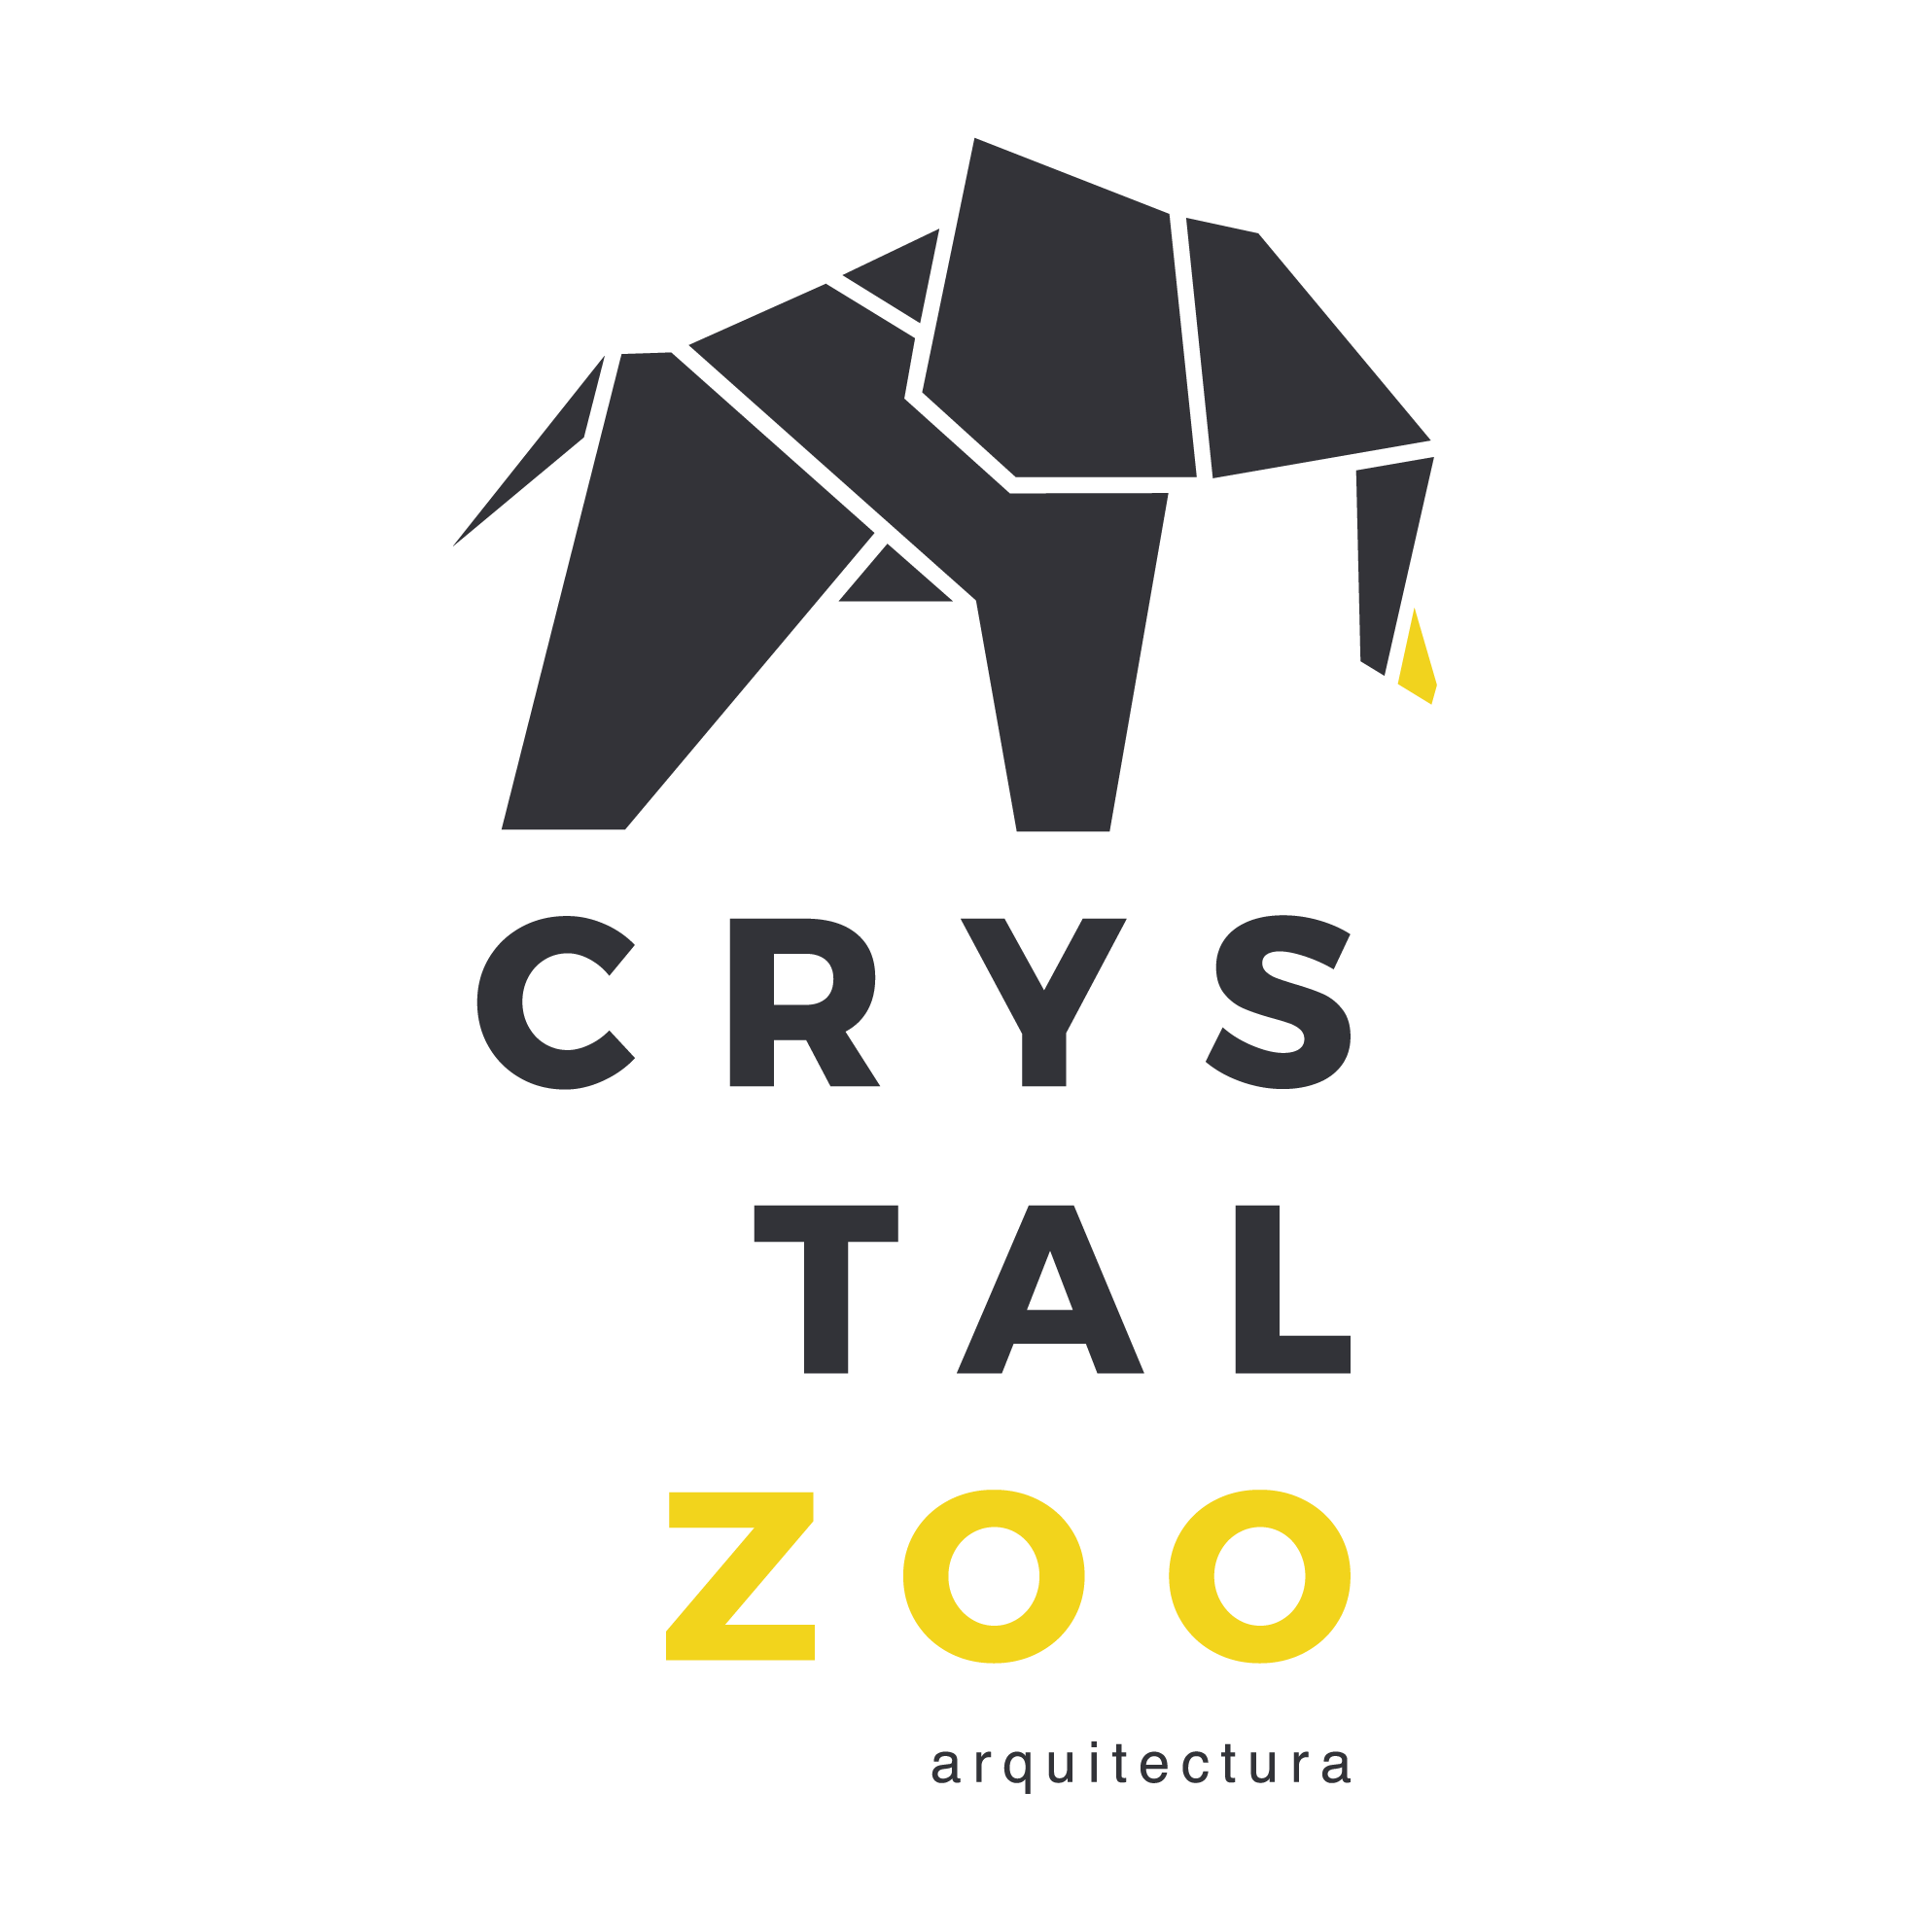 crystalzoo-logo-cuadrado-elefante-color-001